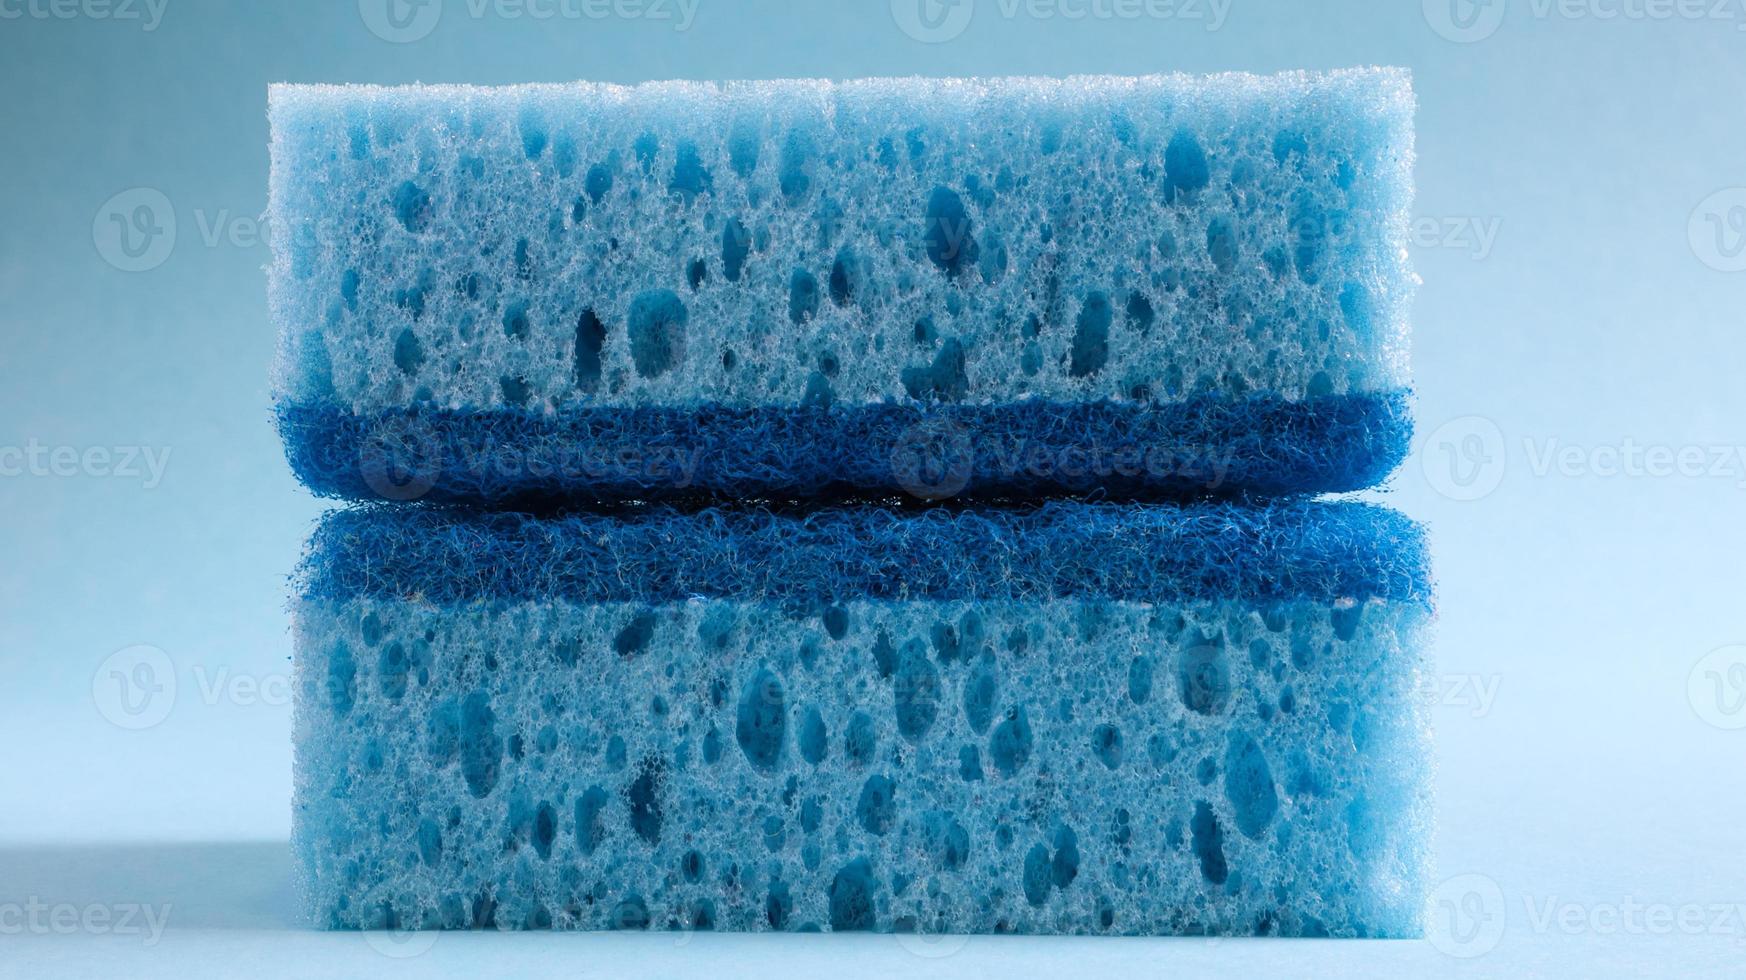 duas esponjas azuis usadas para lavar e limpar a sujeira usada pelas donas de casa no dia a dia. eles são feitos de material poroso, como espuma. retenção de detergente, o que permite gastá-lo economicamente foto